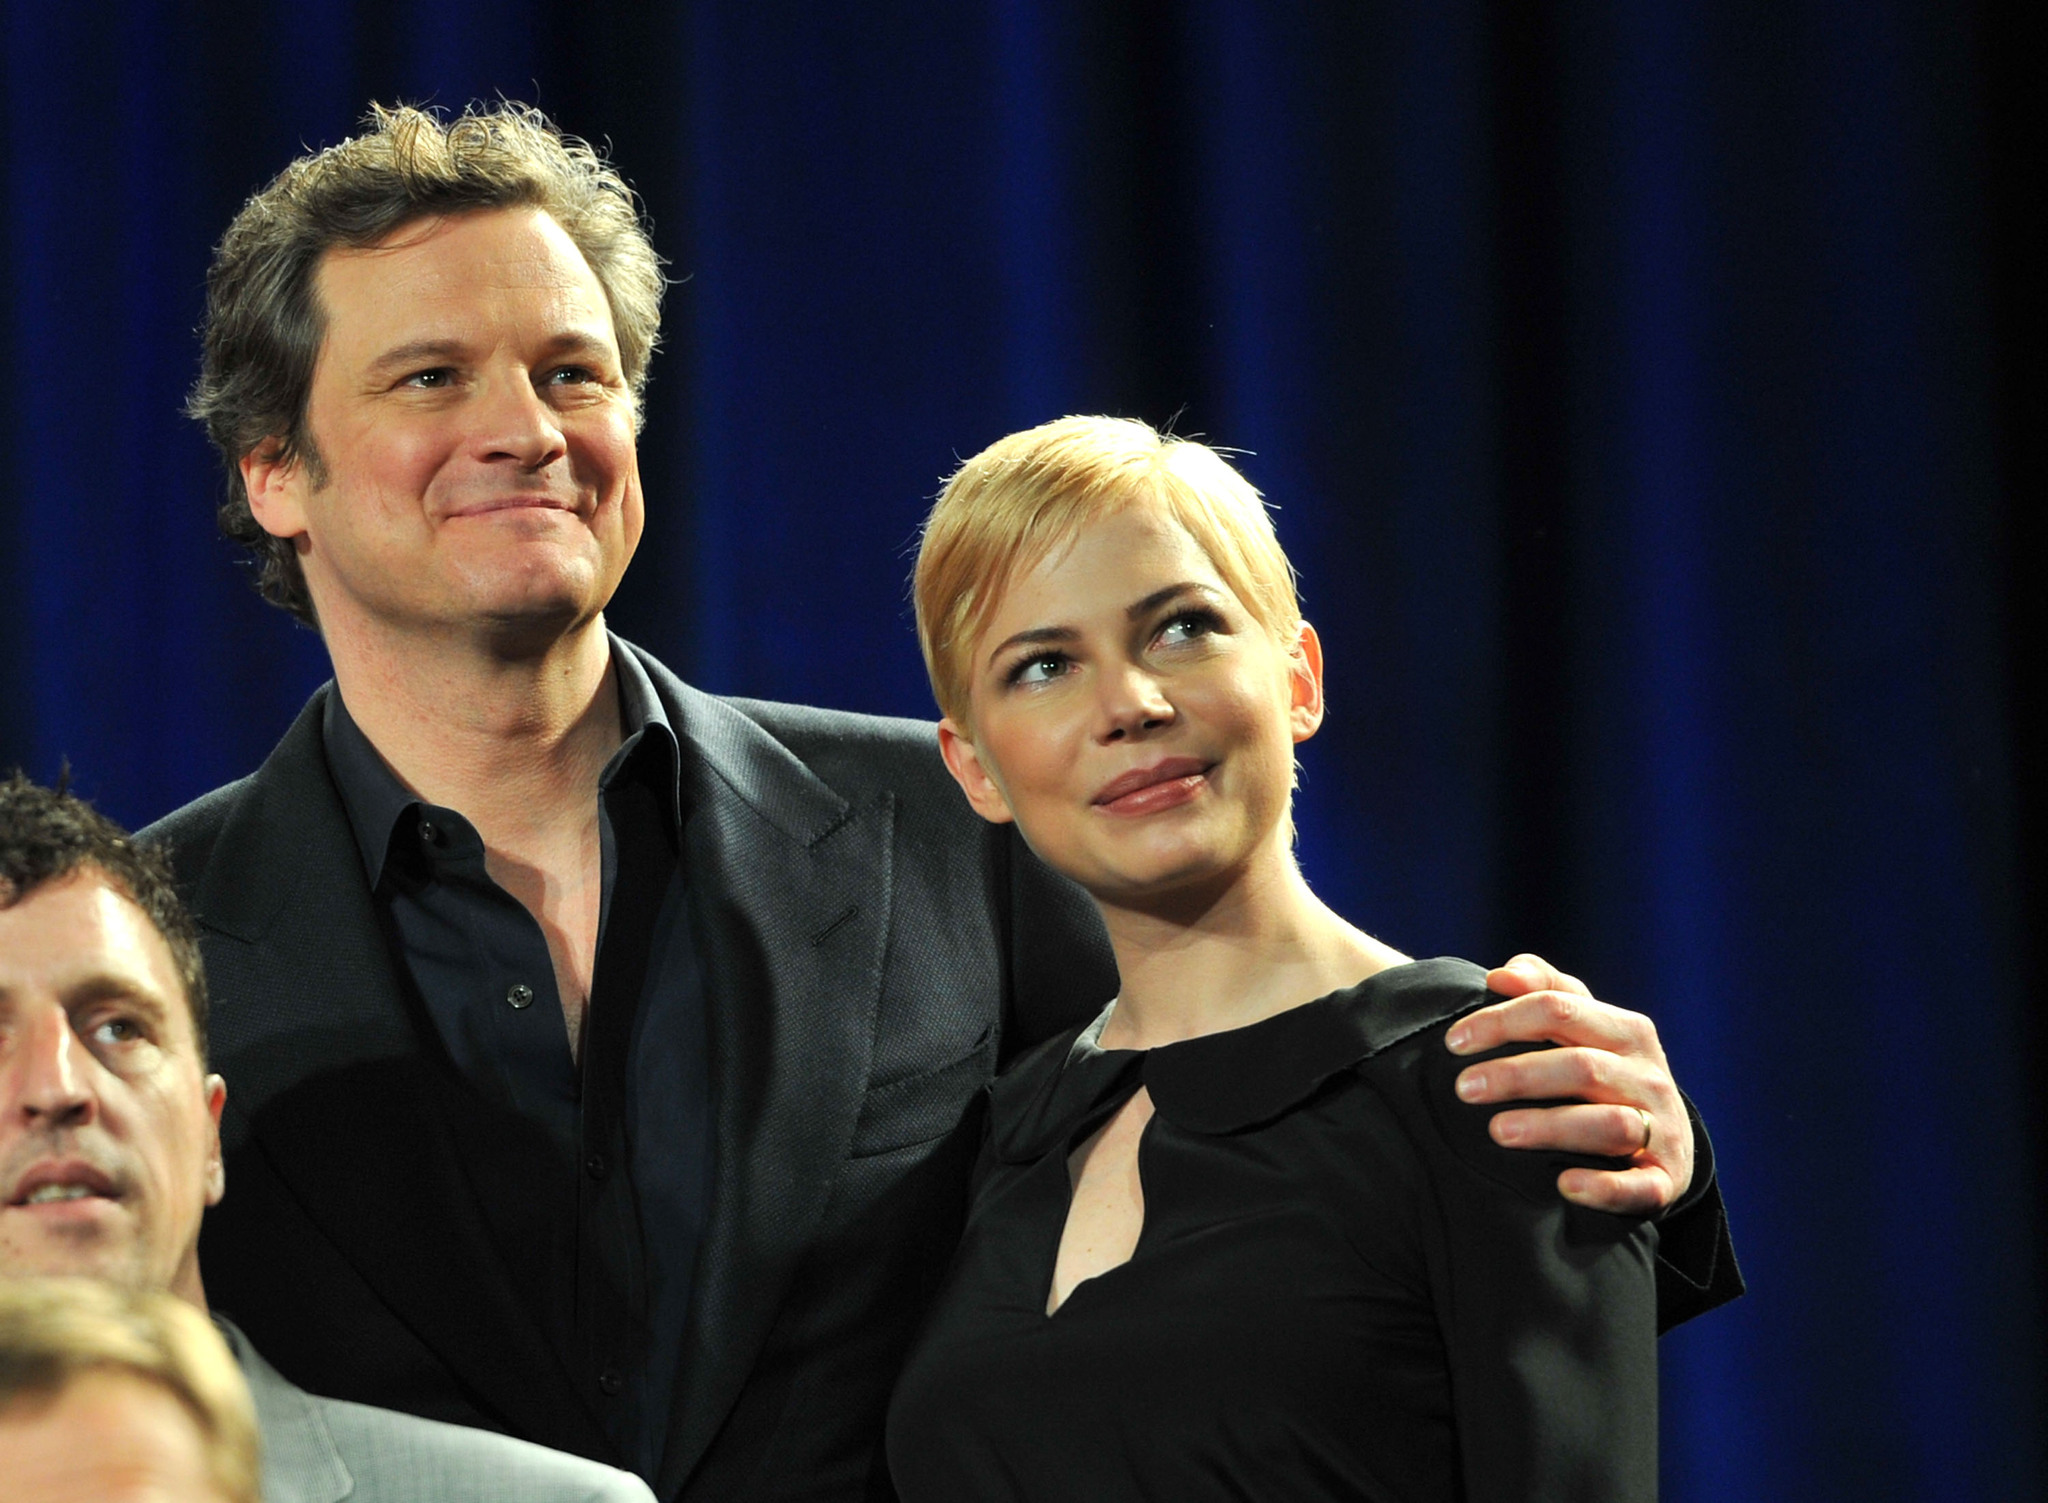 Colin Firth and Michelle Williams